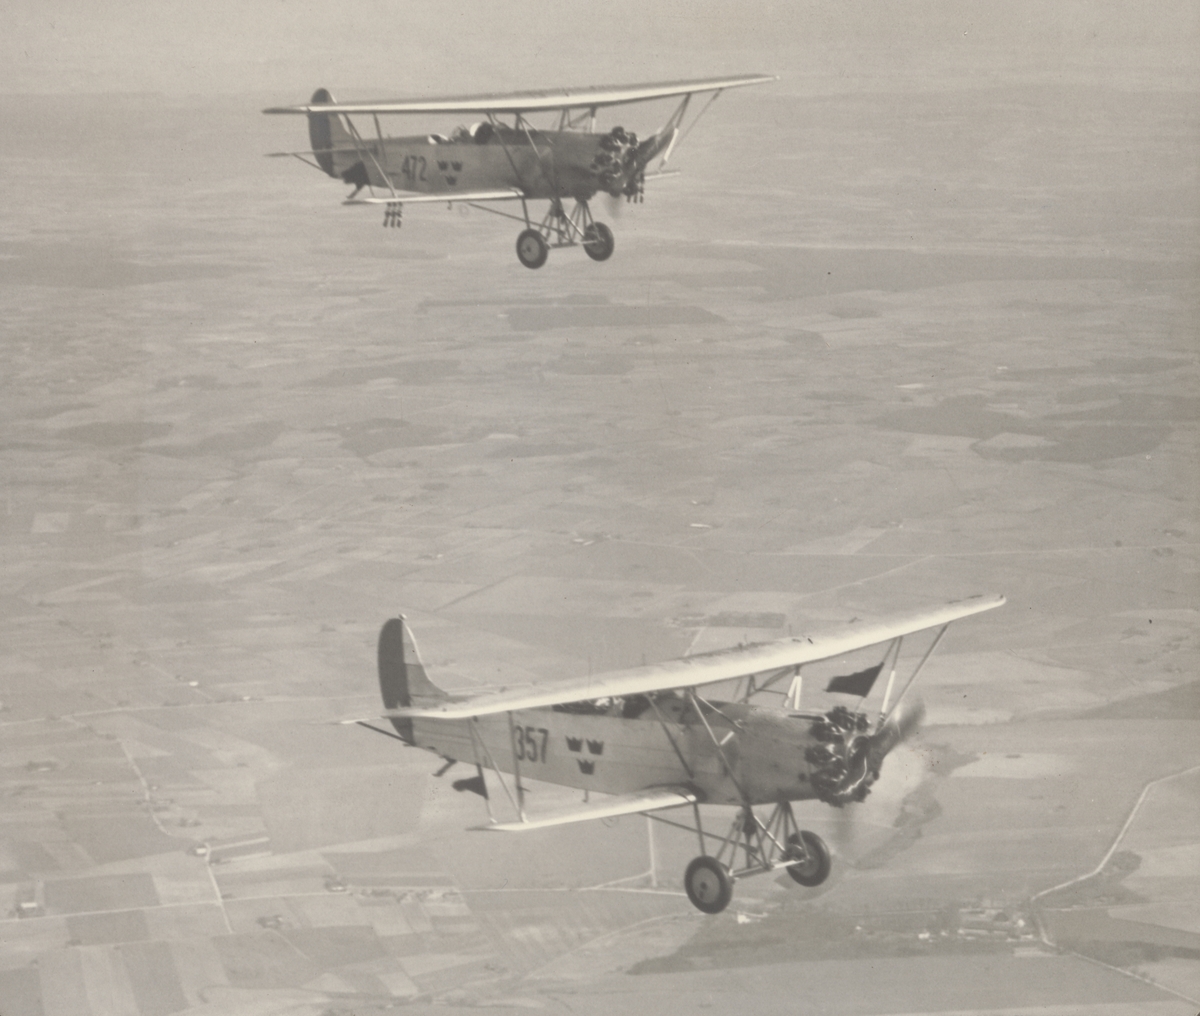 Flygbild av två flygplan S 6, Fokker C.VE i luften över landskap, 1930. Flygplan nr 357 och 472.